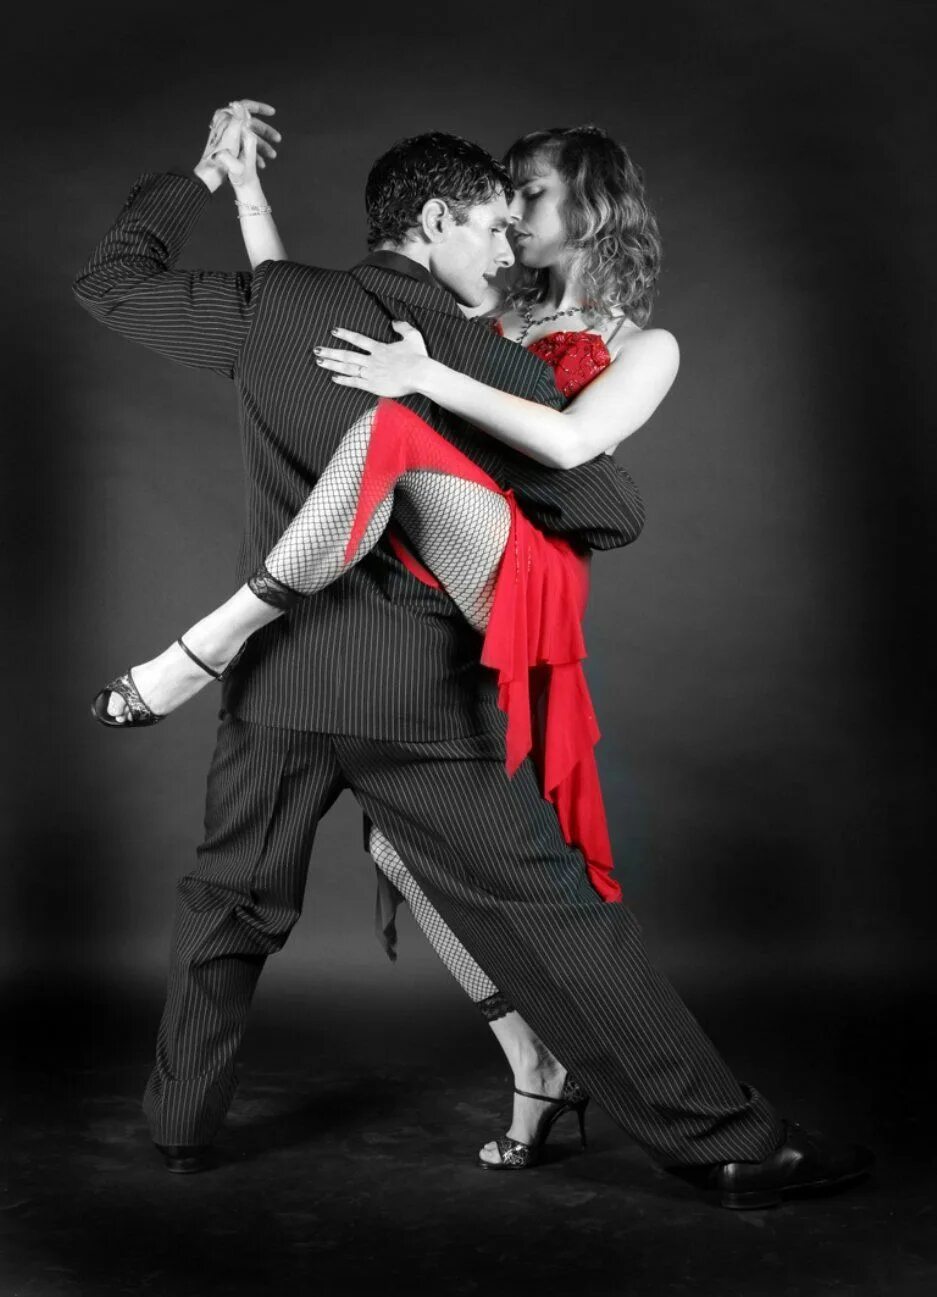 Аргентинское танго. «Tango de pista» (танго для «танцпола»). Аргентинский танцор танго. Танго Луис Сквичиарини. Танцы красивых пар